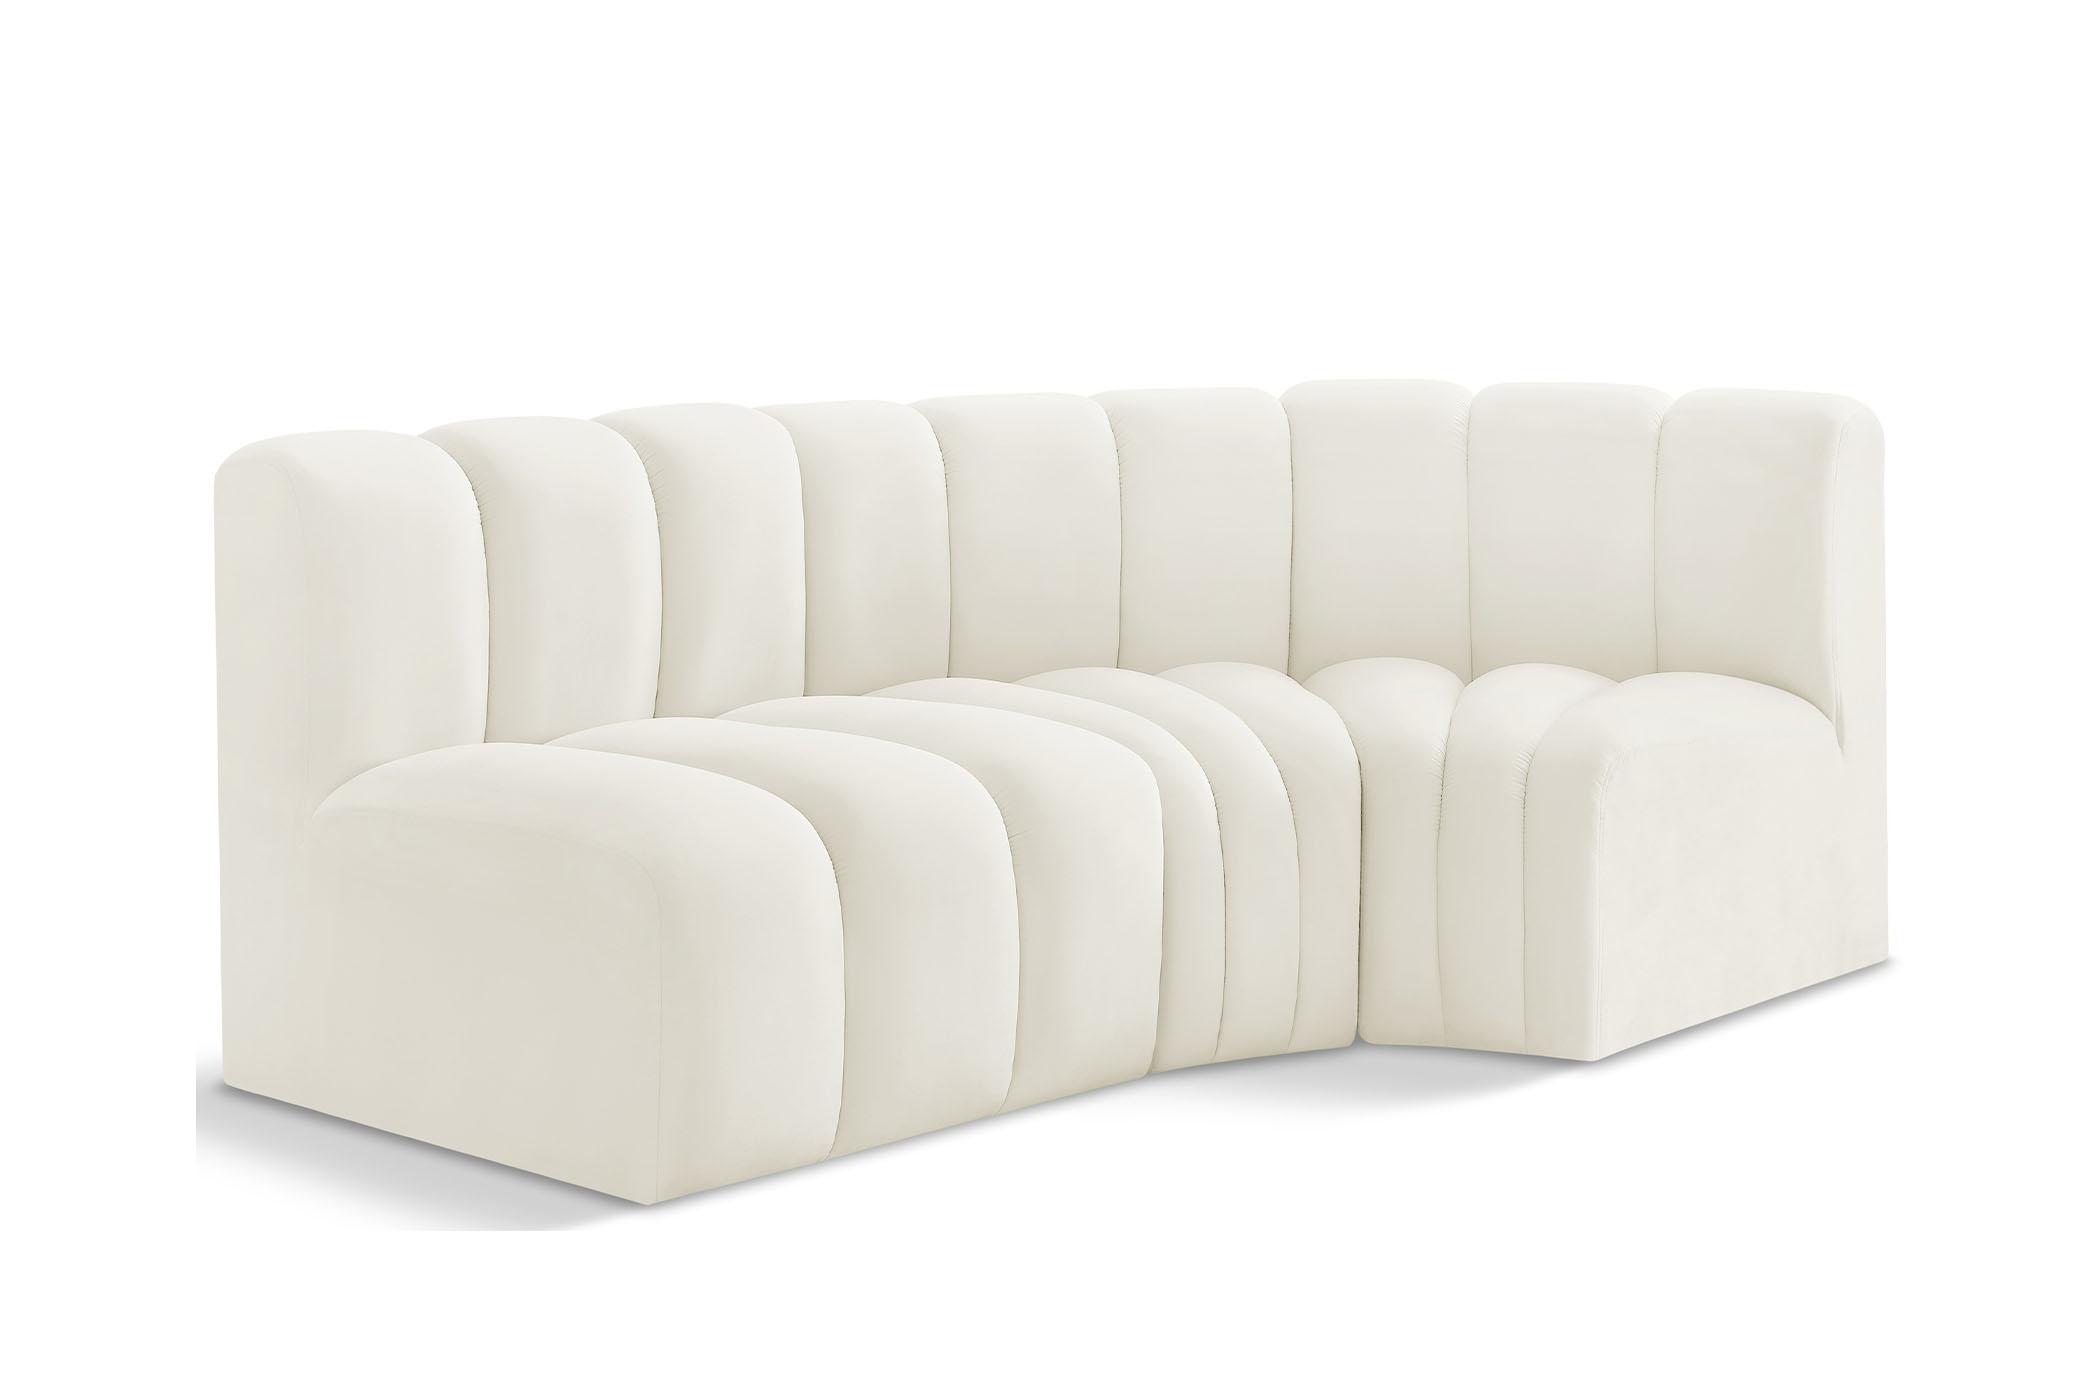 Contemporary, Modern Modular Sectional Sofa ARC 103Cream-S3A 103Cream-S3A in Cream Velvet